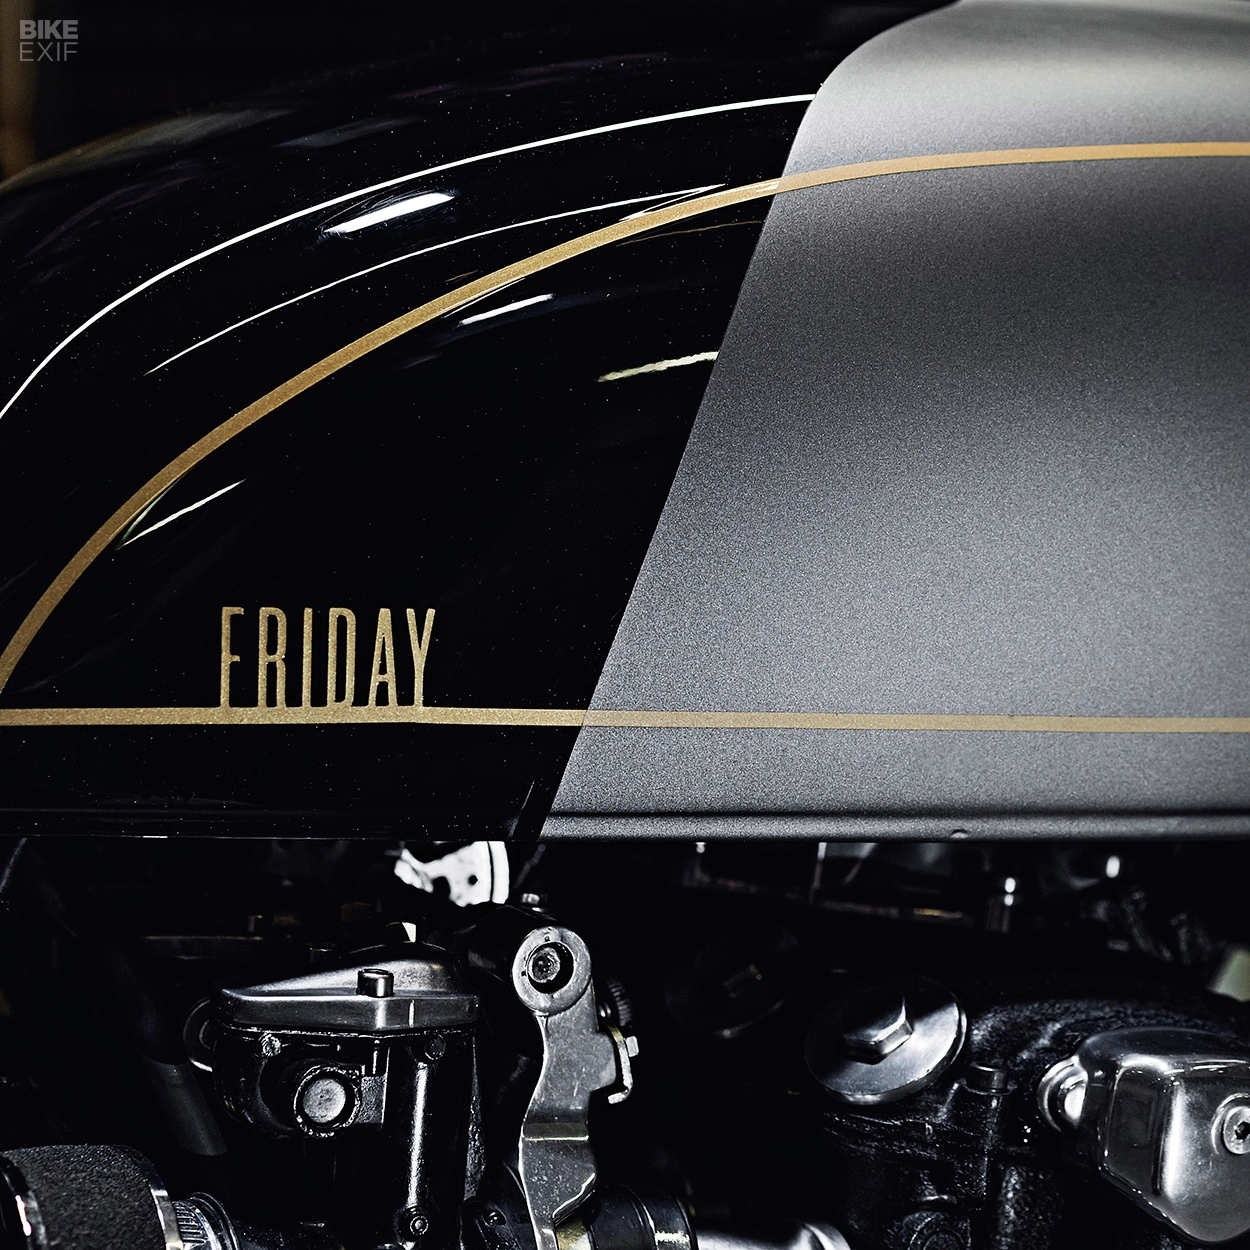 Honda cb550 độ sắc nét trong bản độ mang tên ngày thứ 6